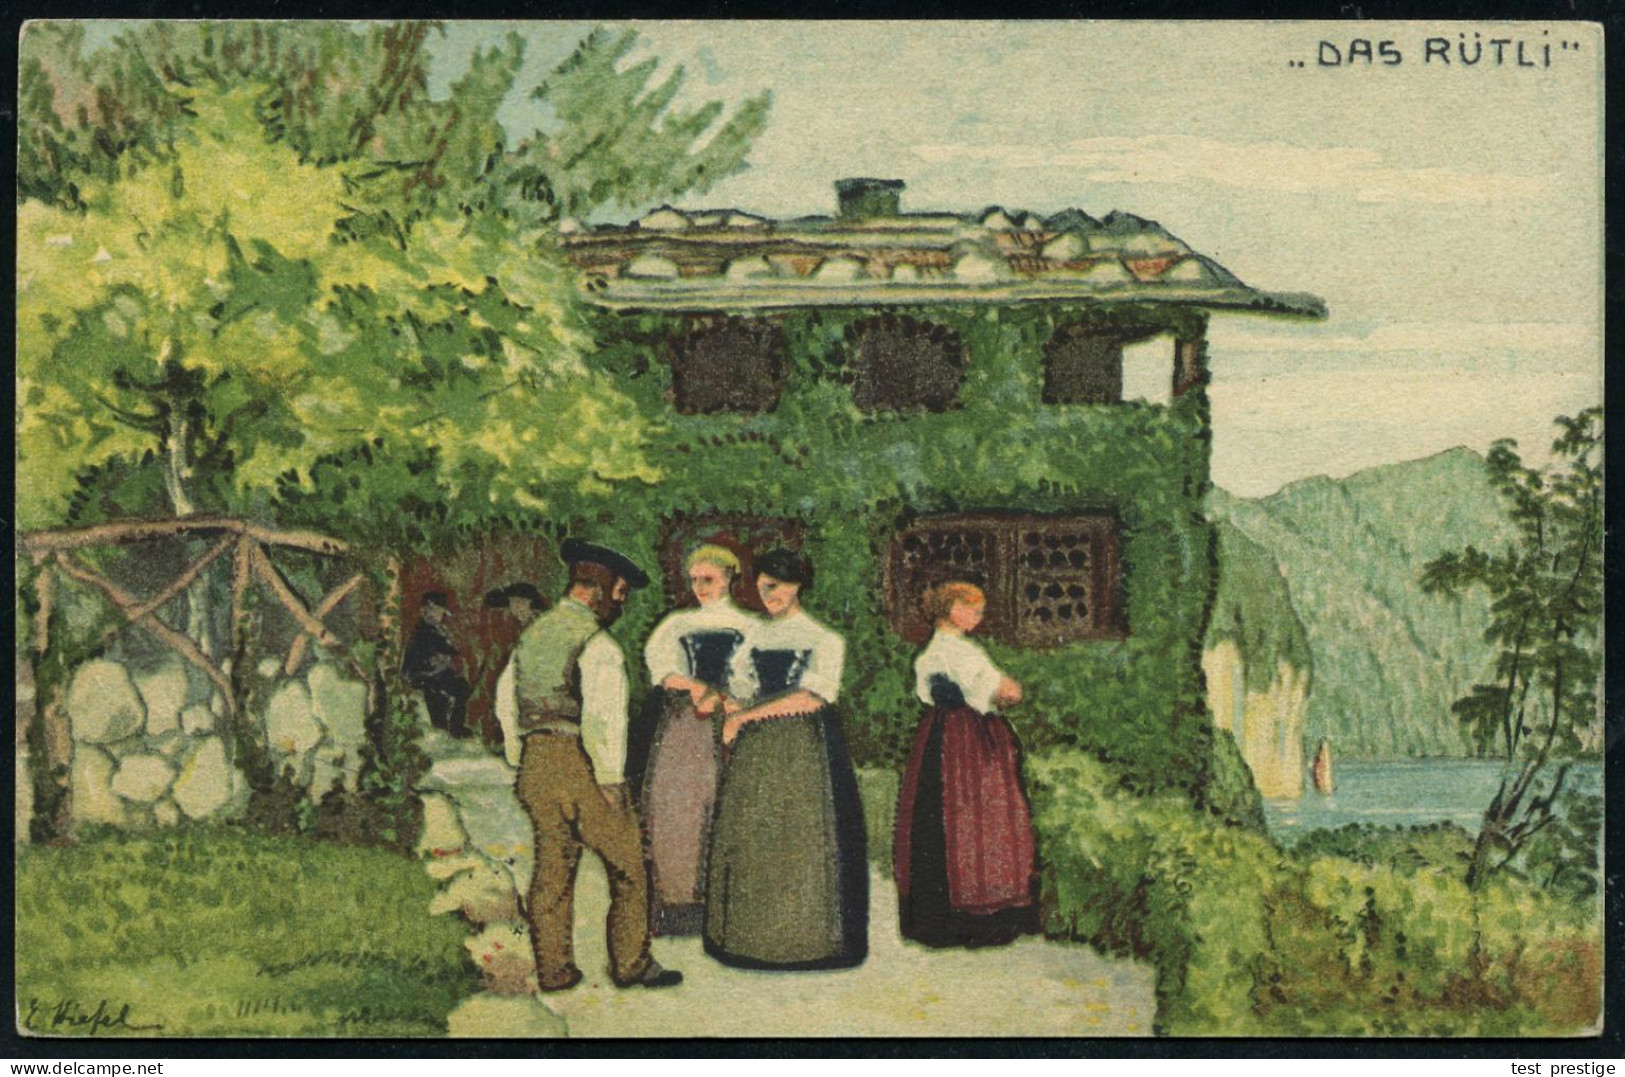 SCHWEIZ 1913 (22.7.) 5 C. Bundesfeier-P. Tellknabe, Grün: Tbc-Fond "Rütli" (Schweizer In Festtracht) + Zusatzfrankatur,  - Maladies